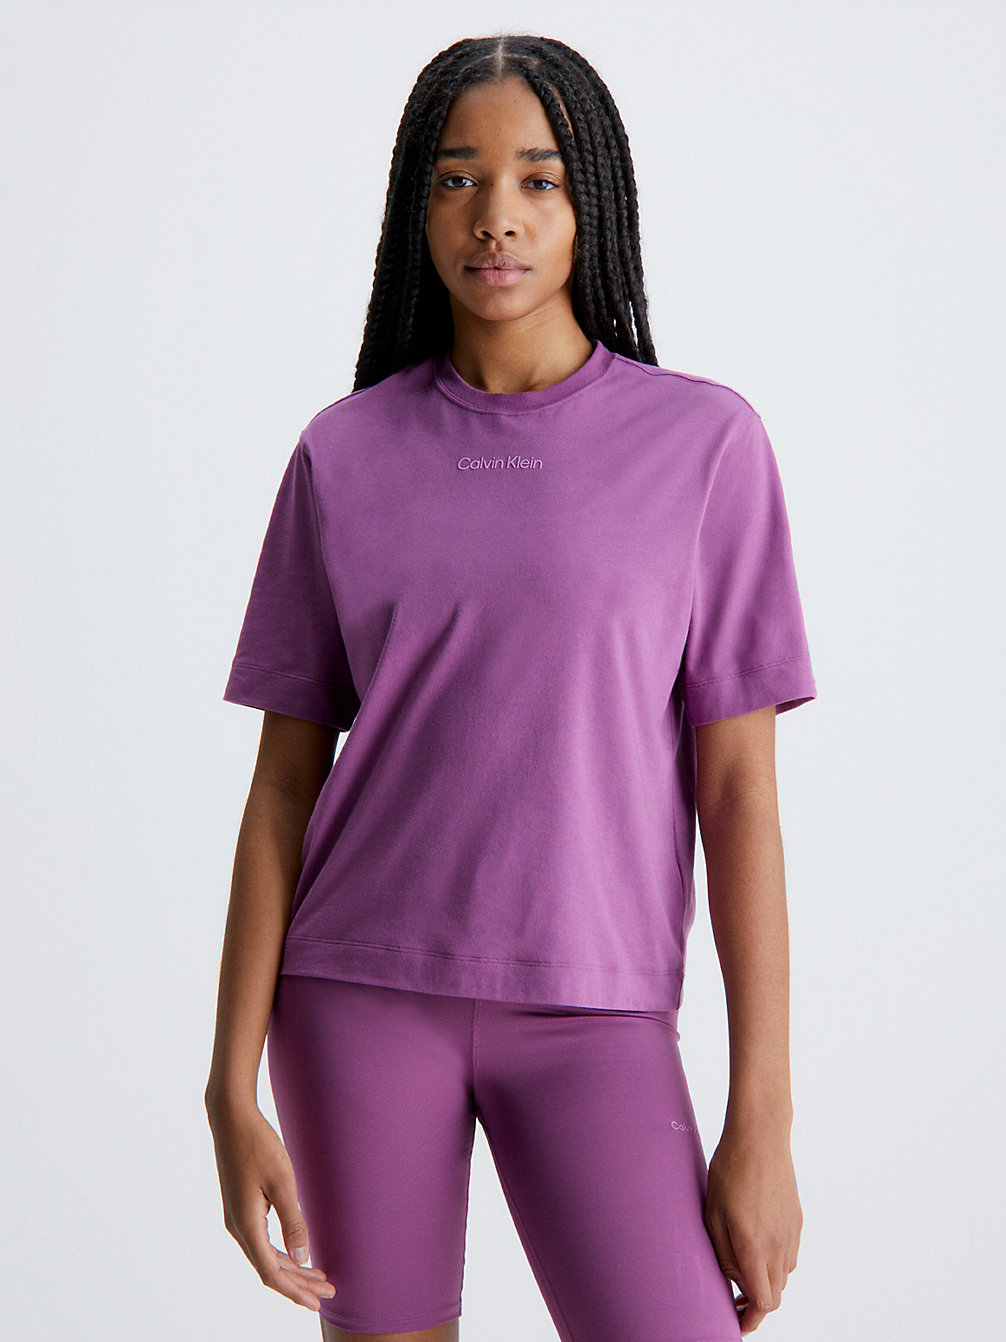 AMETHYST Sport T-Shirt undefined dames Calvin Klein